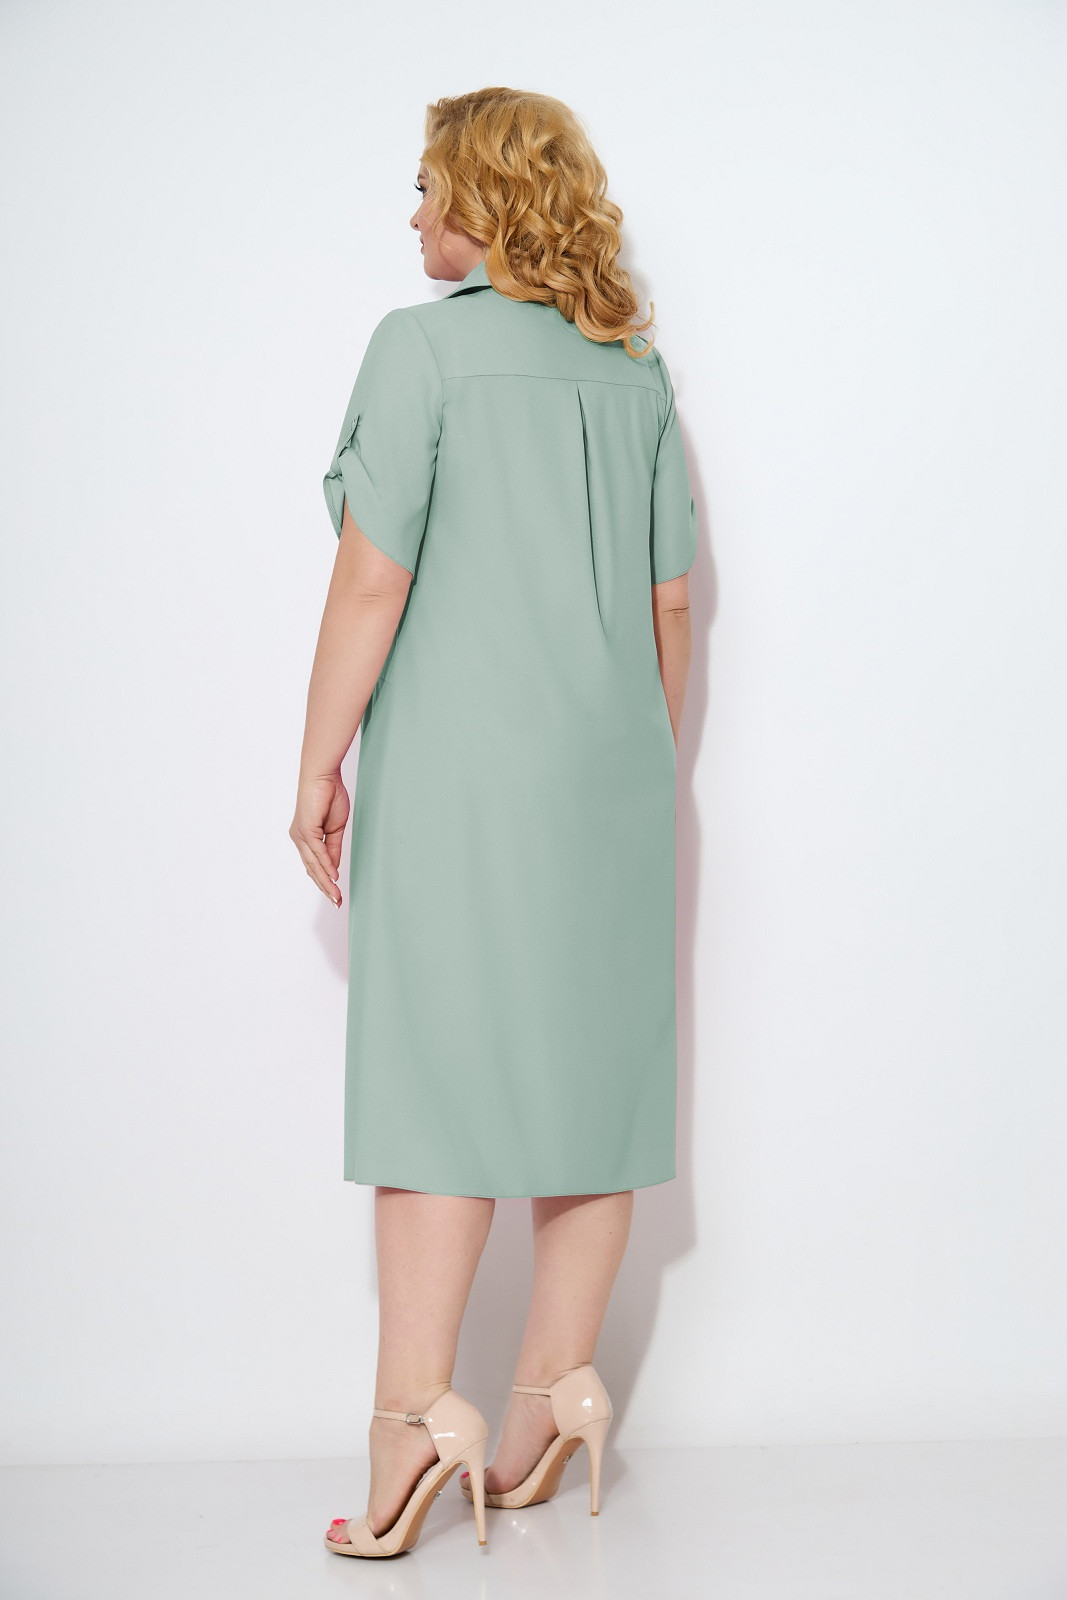 Платье Кокетка и К 946-1 светло-оливковый